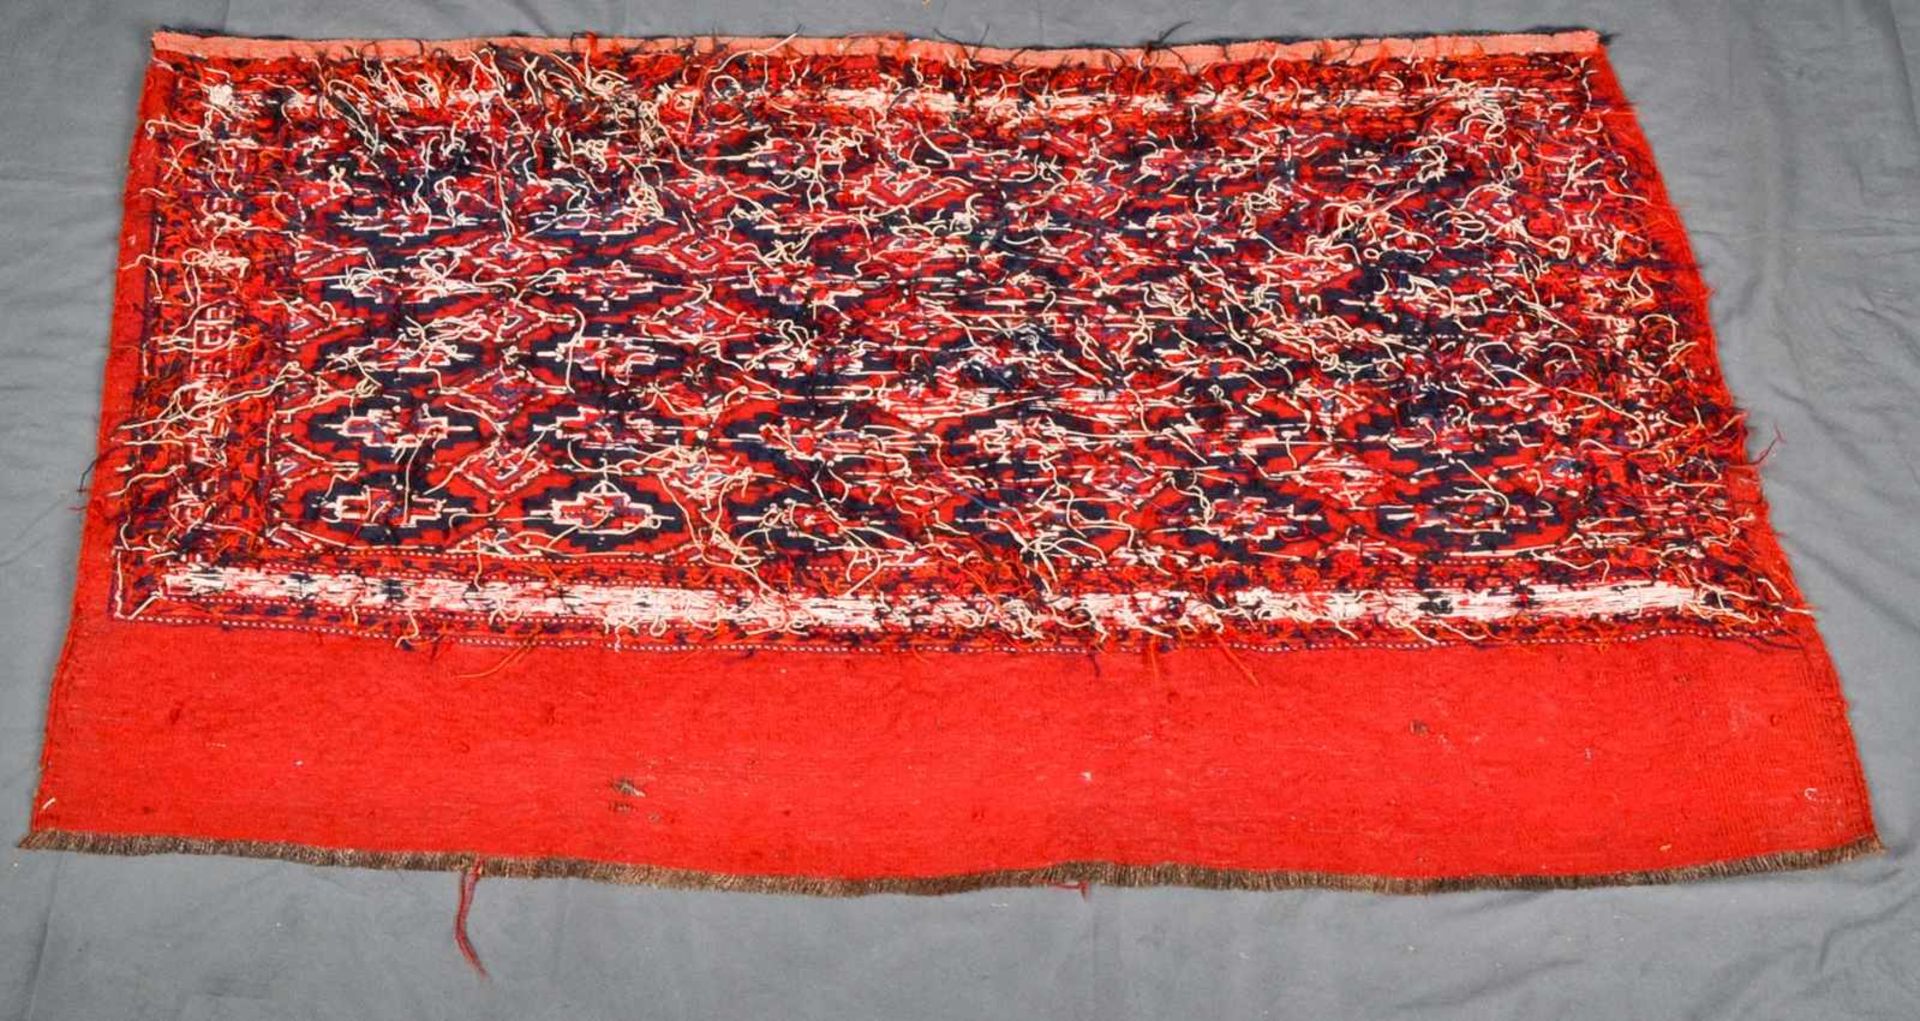 3teiliges Konvolut "alte und antike" Teppiche, bestehend aus drei versch. Kelim bzw. Flachgewebe- - Bild 7 aus 14